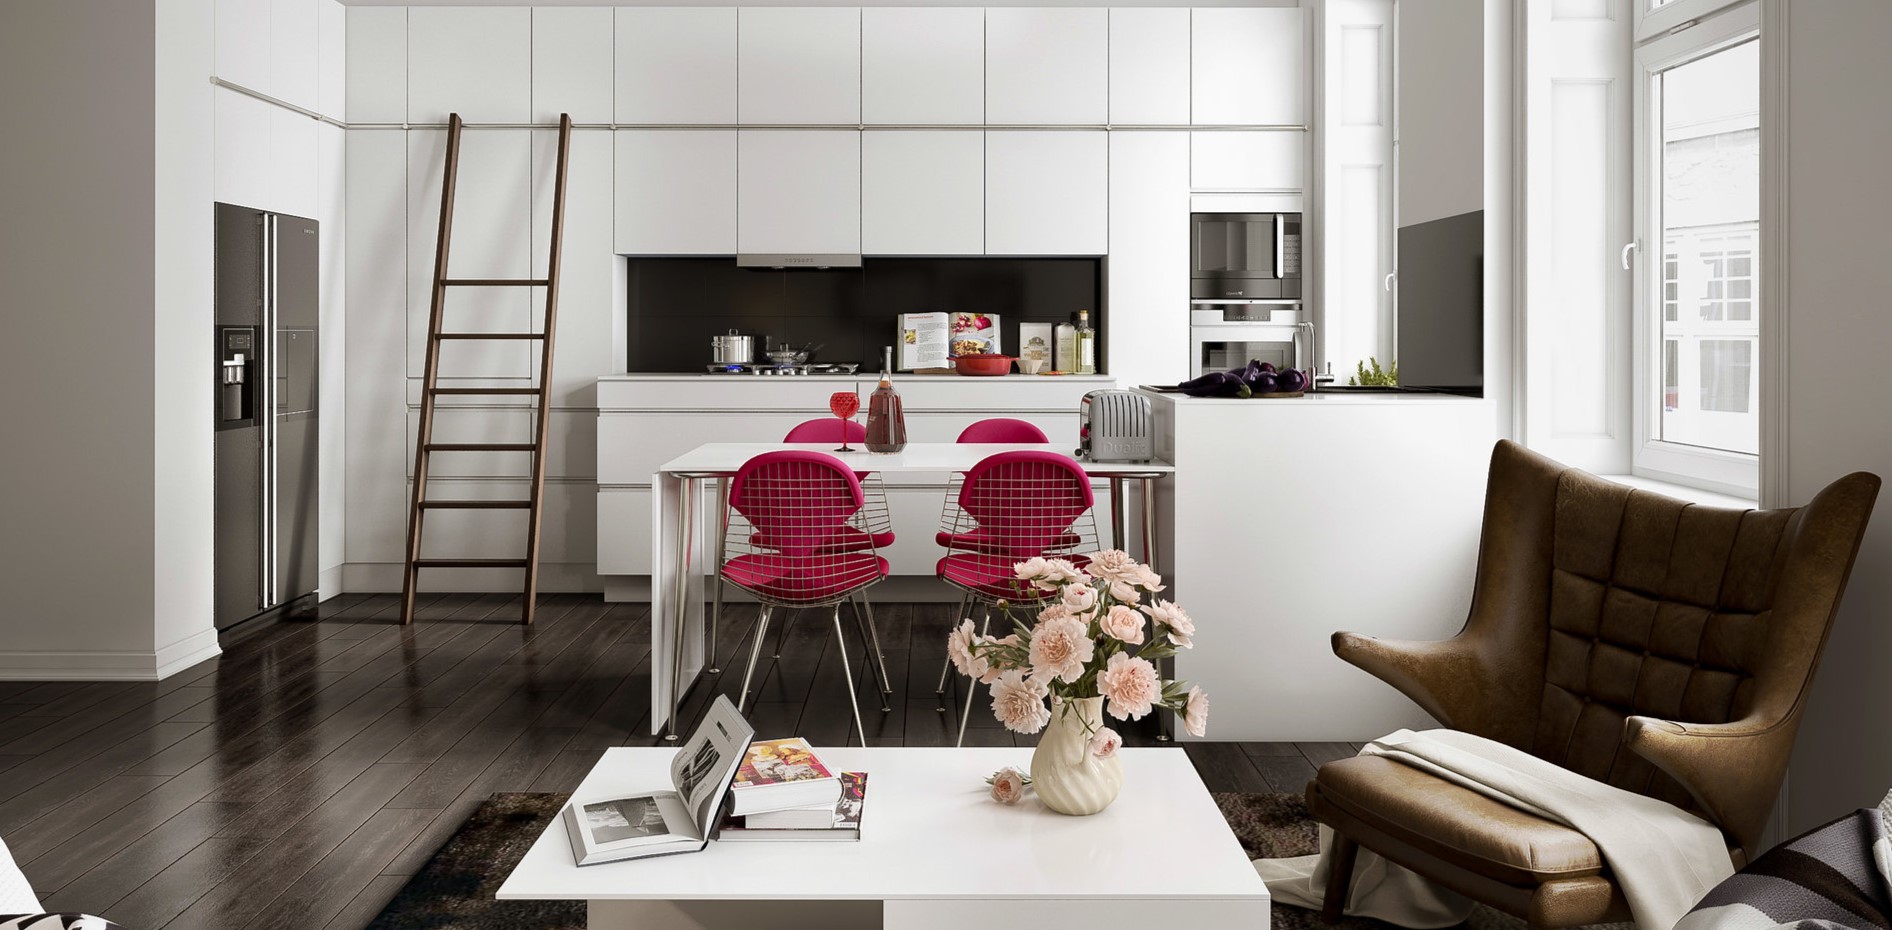 Интерьер кухни-гостиной оформлен в скандинавском стиле с использованием белого цвета